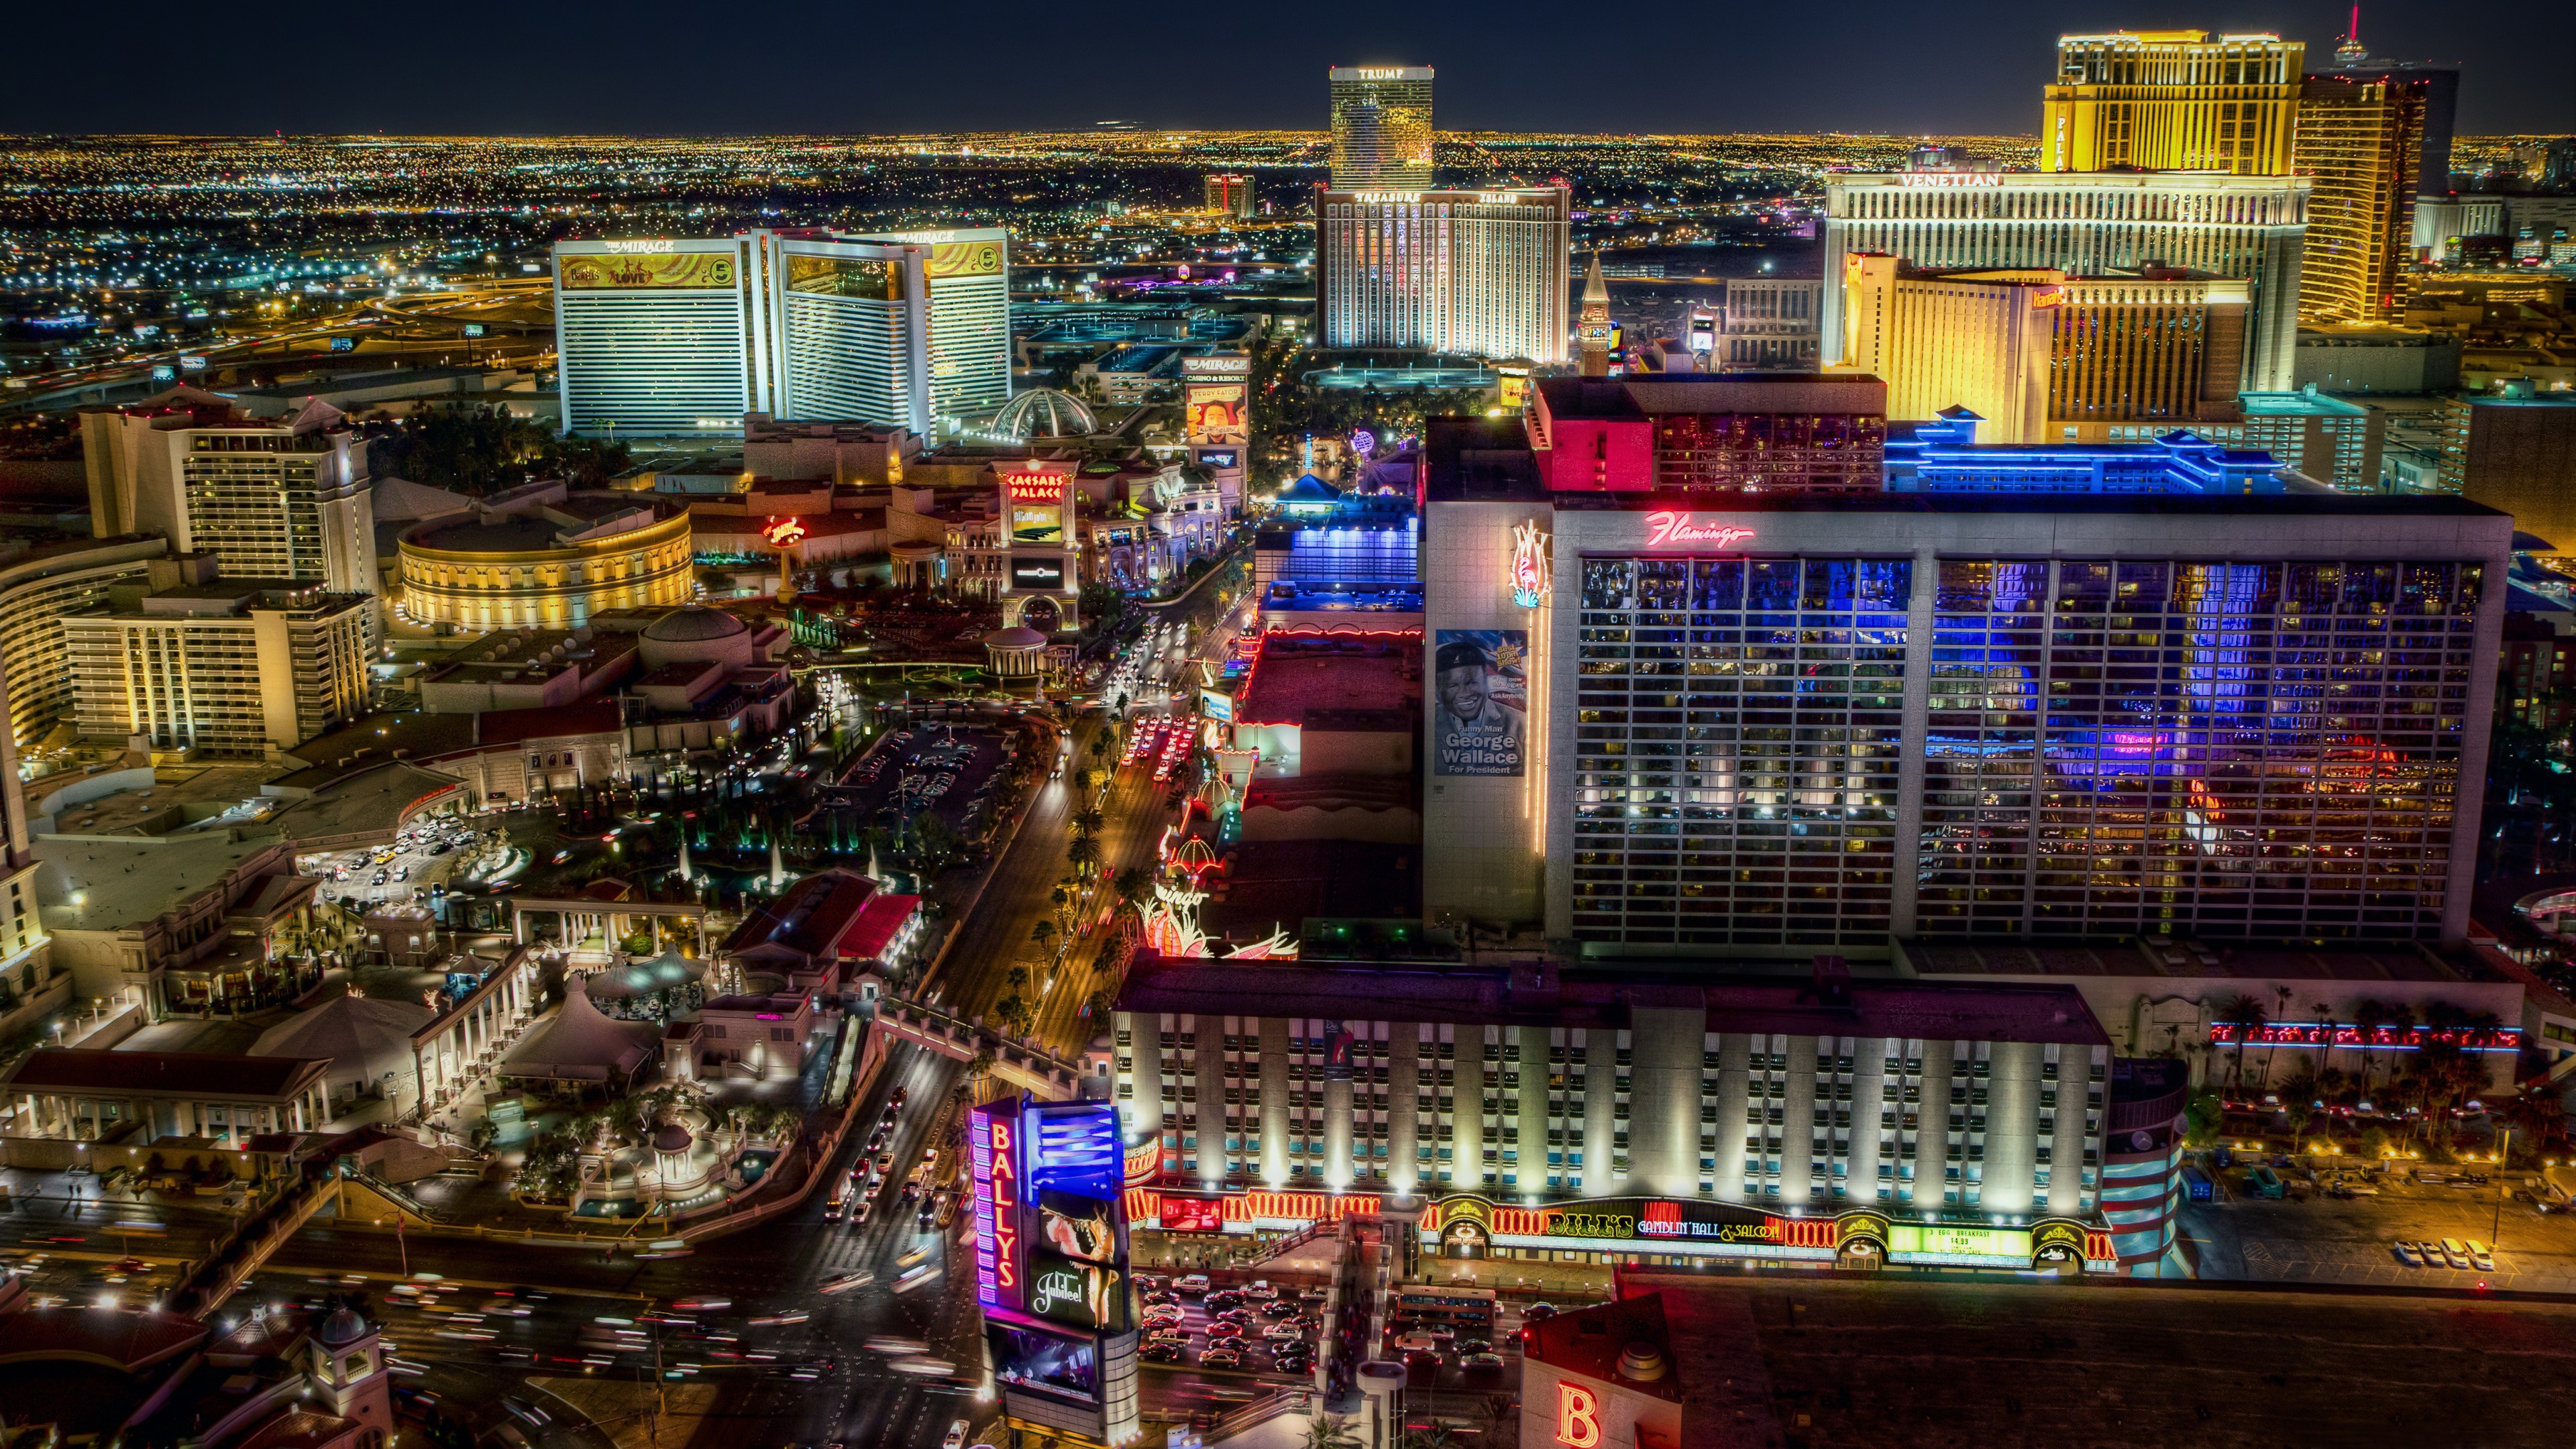 Las Vegas Nevada, Luxury hotels, Casino flamingo, Mirage caesar bellagio Paris, 3840x2160 4K Desktop